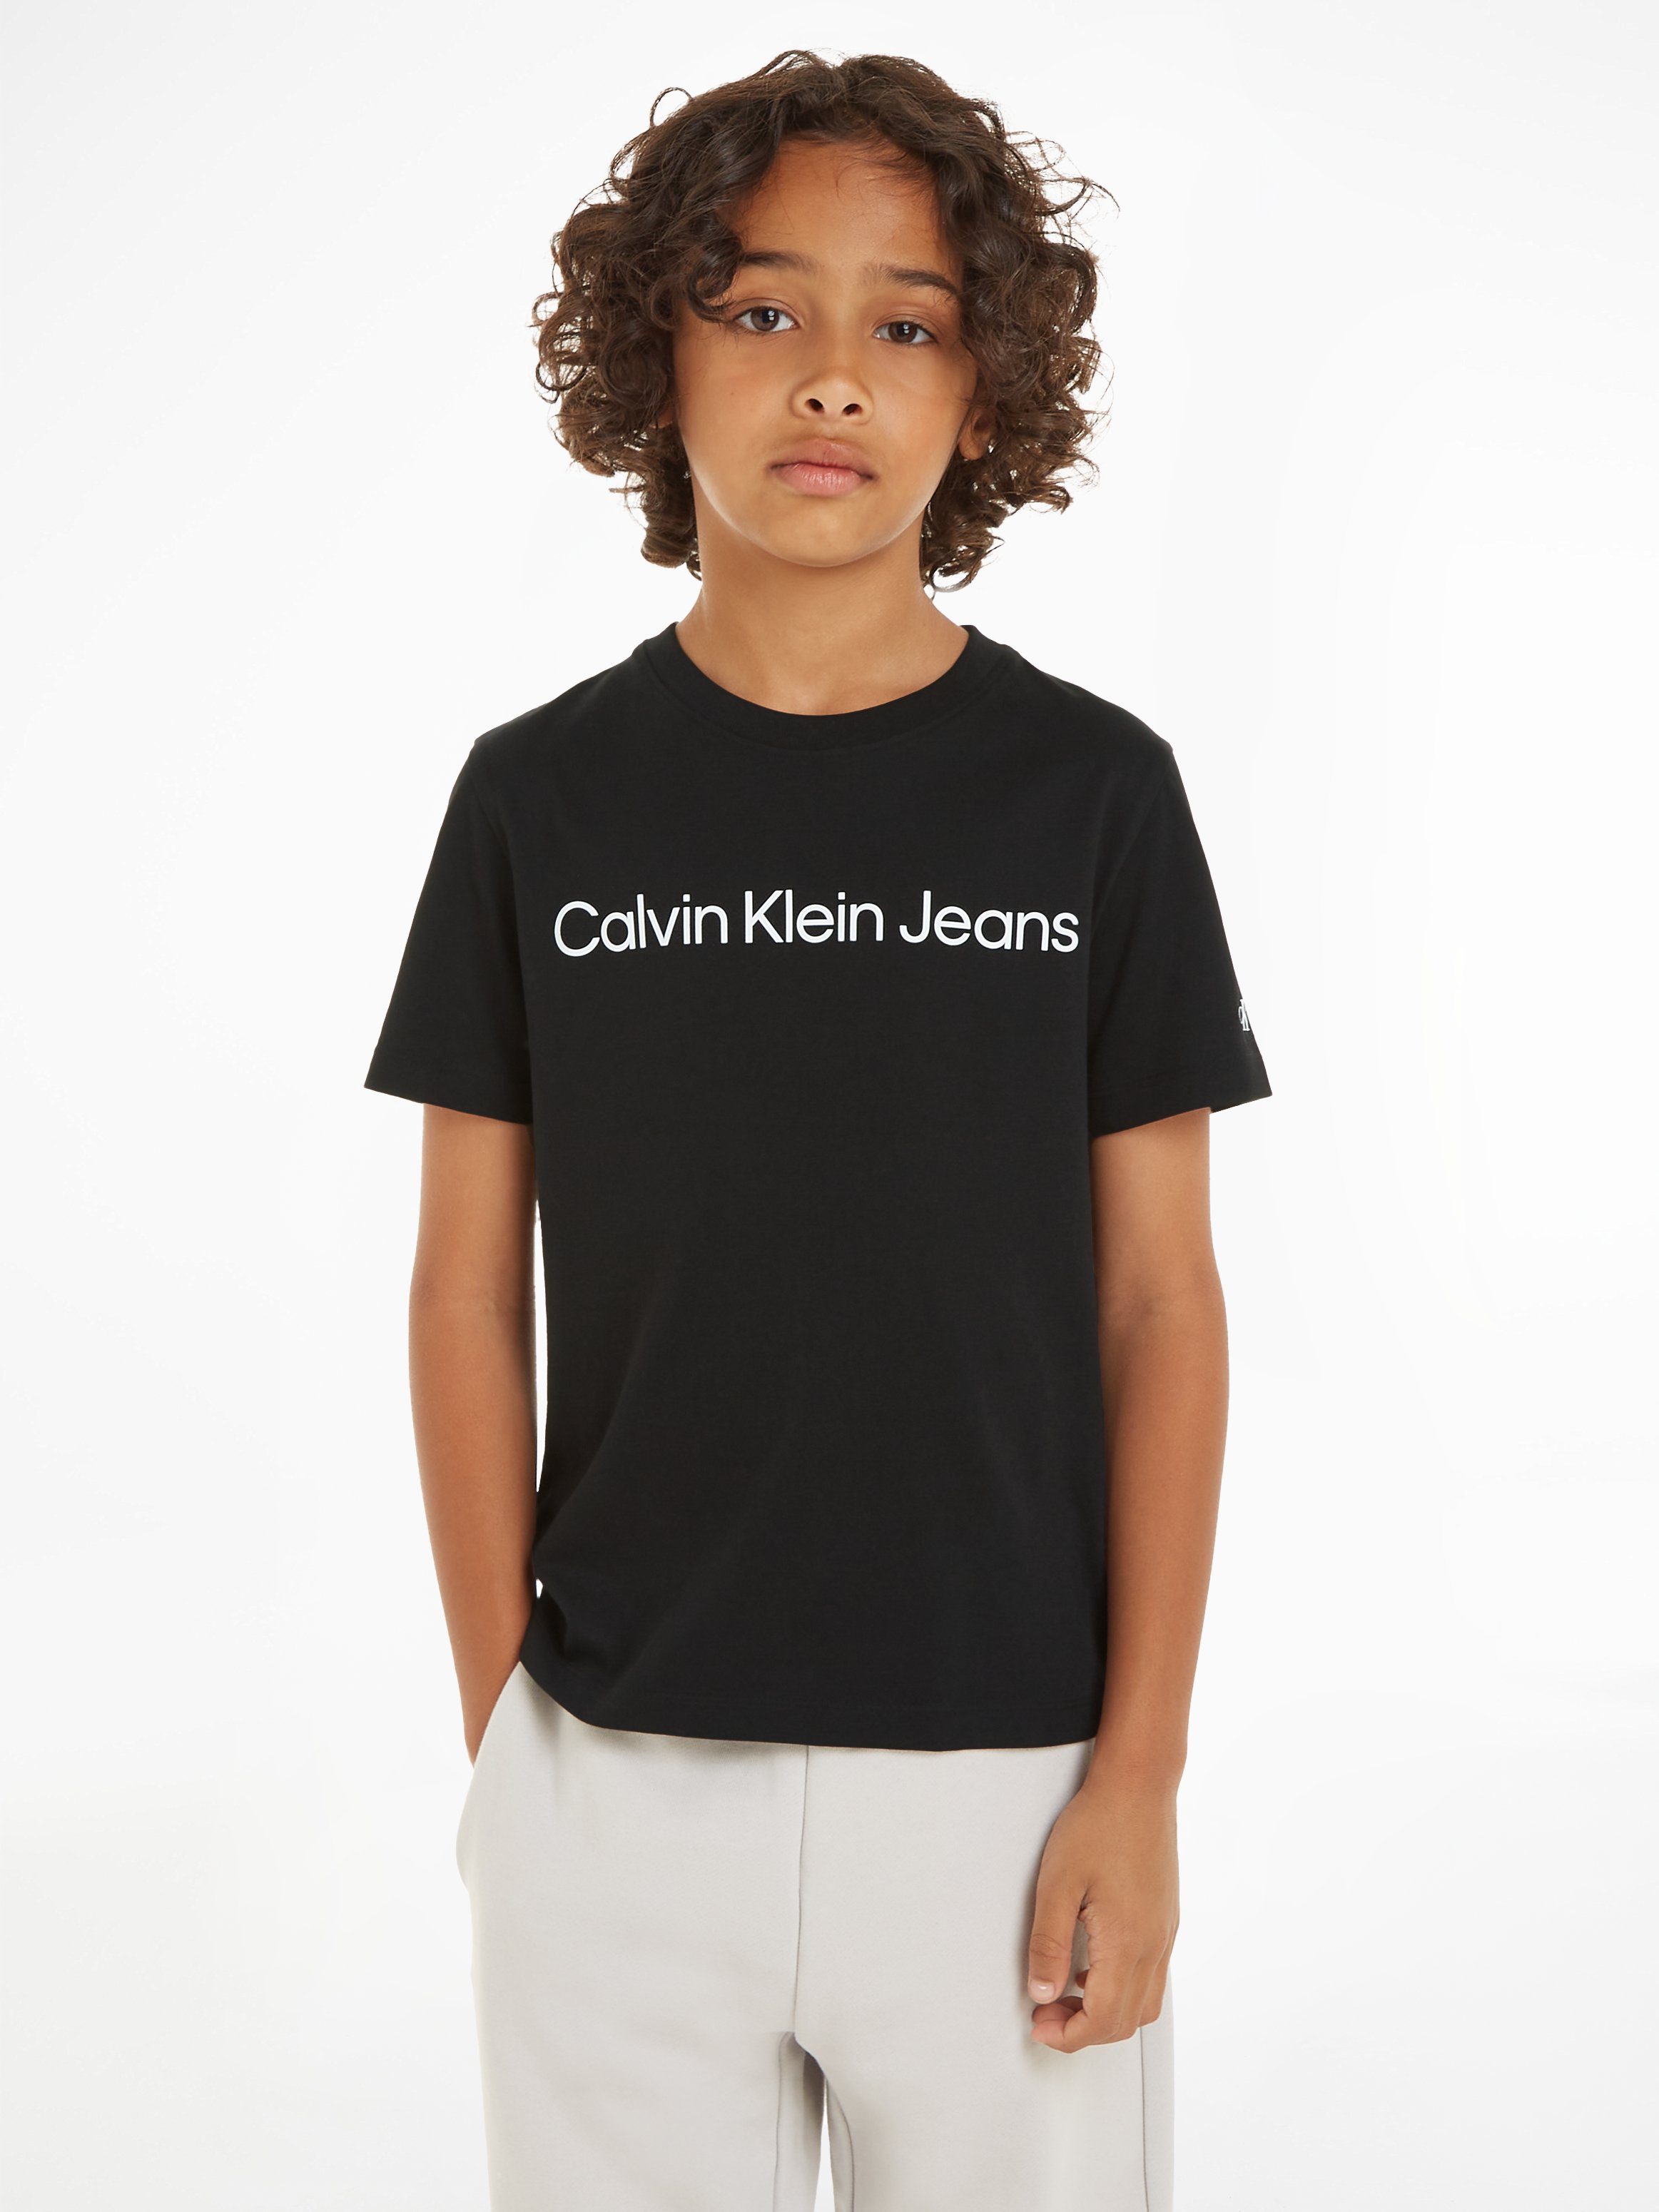 Calvin Klein LOGO SS Sweatshirt T-SHIRT Kinder Jahre INST. 16 Jeans bis für